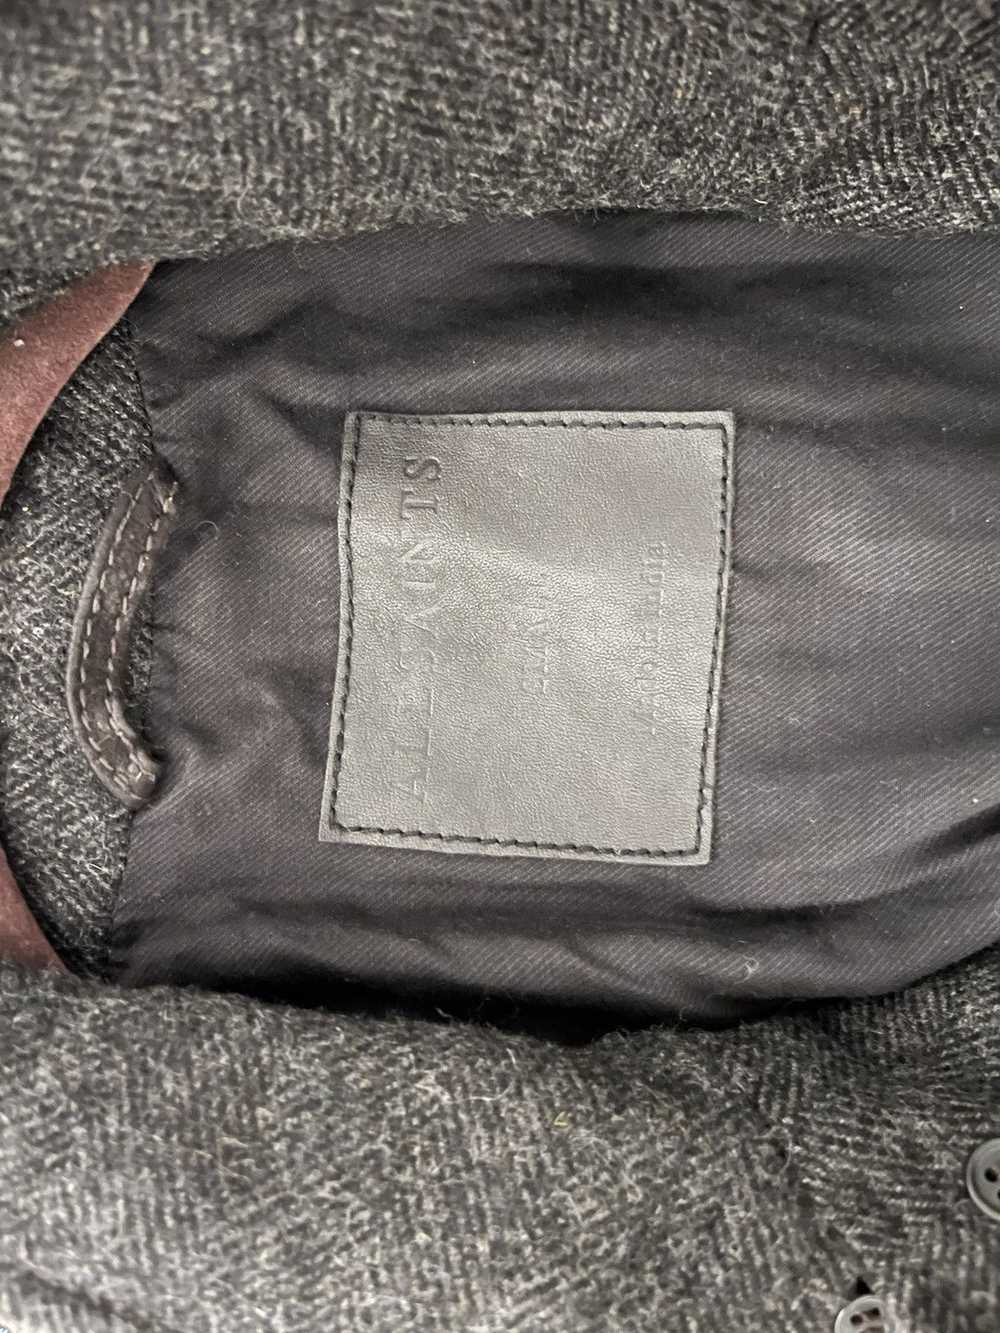 Allsaints AllSaints Goat Leather Jacket, Size S, … - image 3